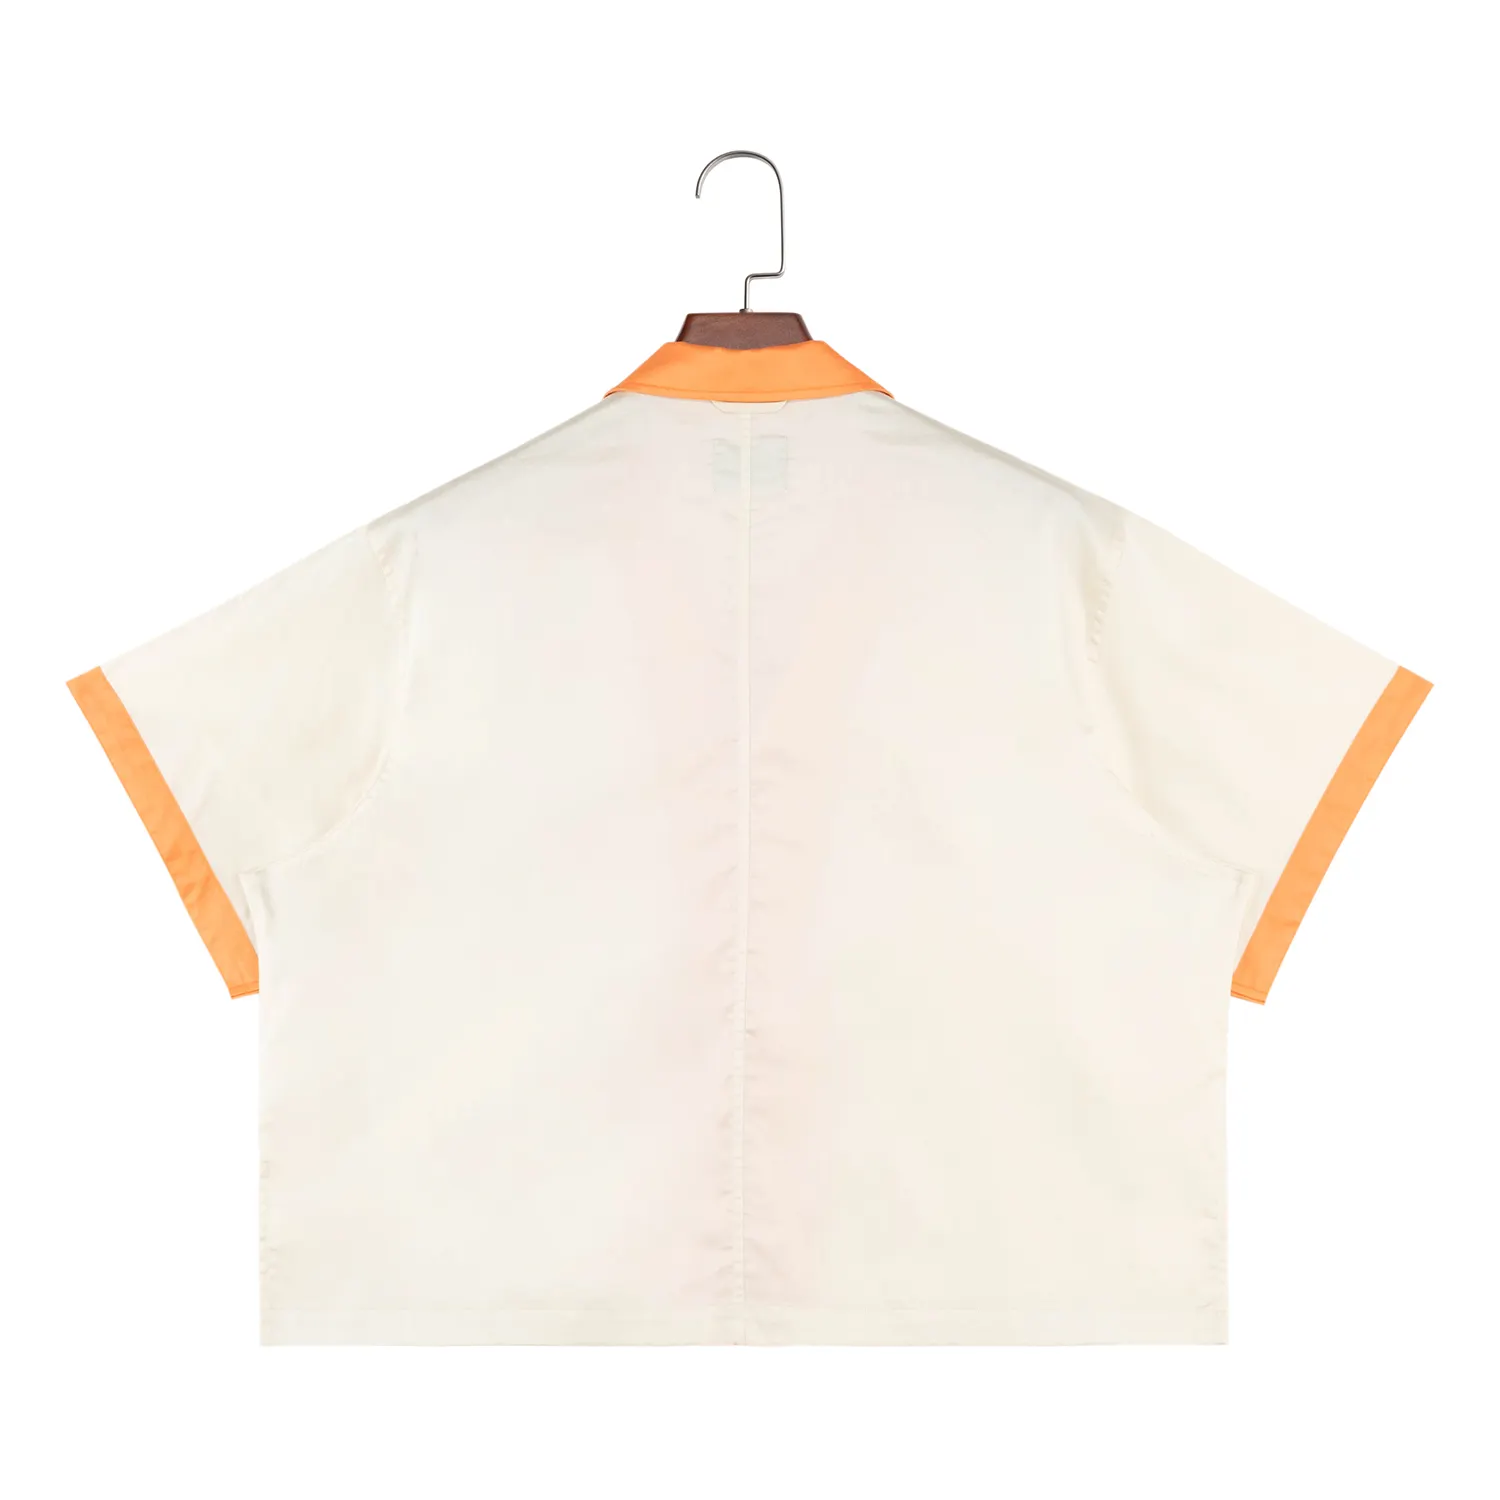 Custom Short Sleeve Contrast Trims Shirt Orange Beige Matching Cuban Collar Matching Vacation Beach Men Boxy Button Up Shirt